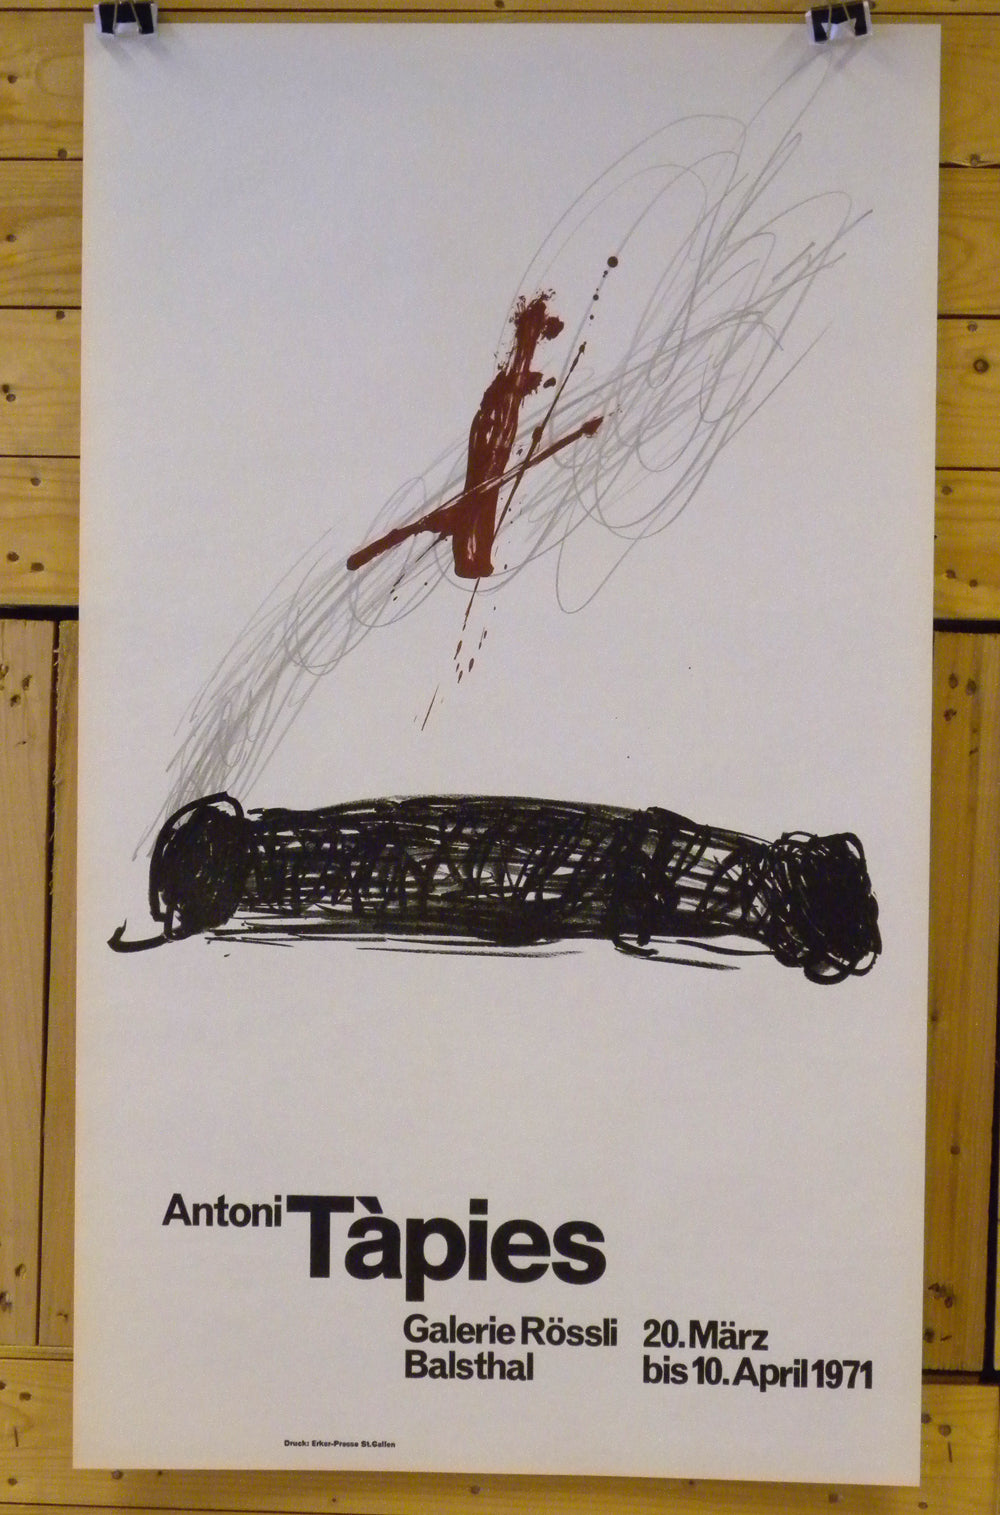 Tapies, Antoni — Galerie Rössli